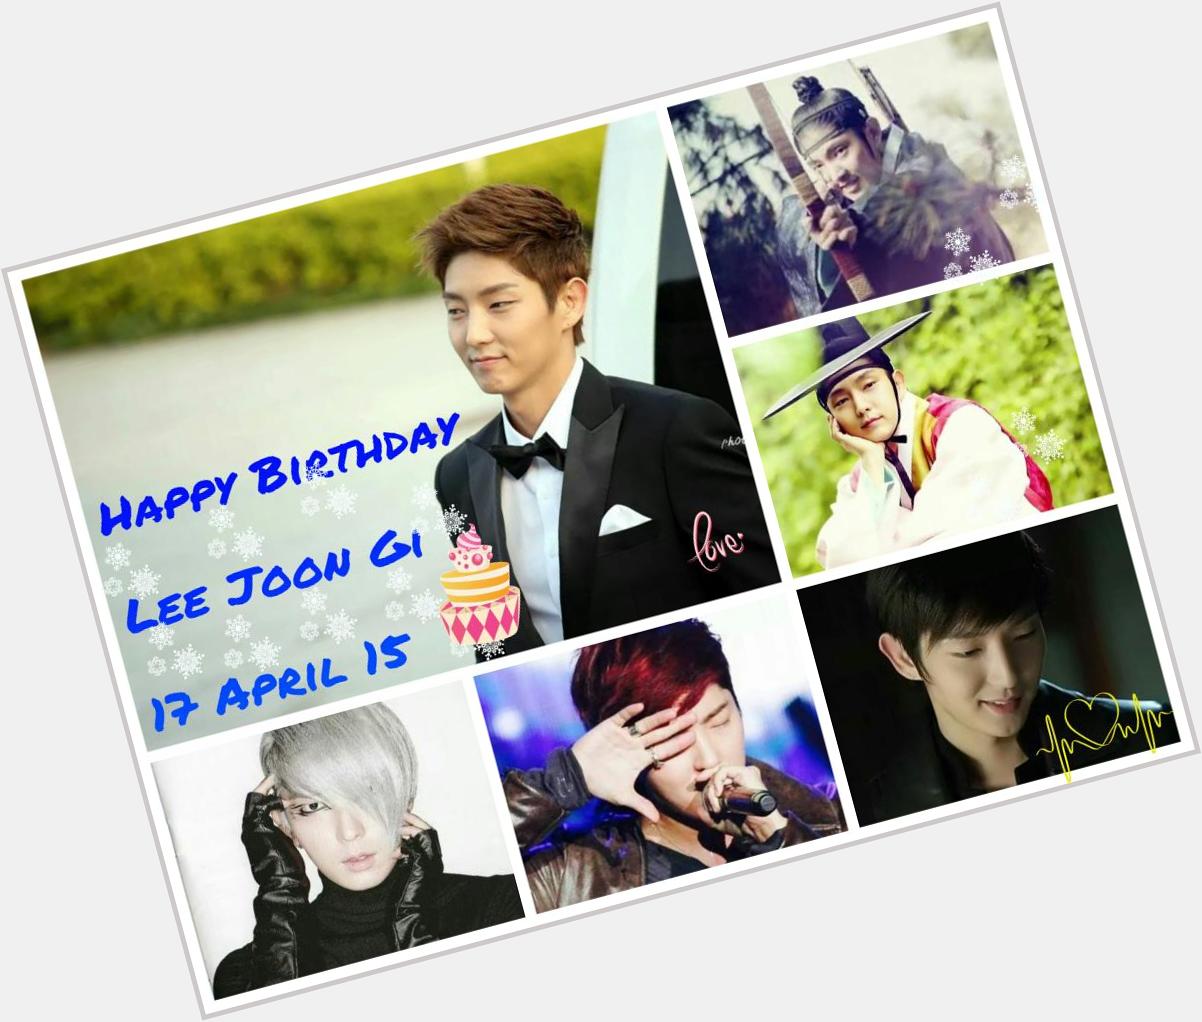  Happy birthday Lee Joon Gi oppa.  .            